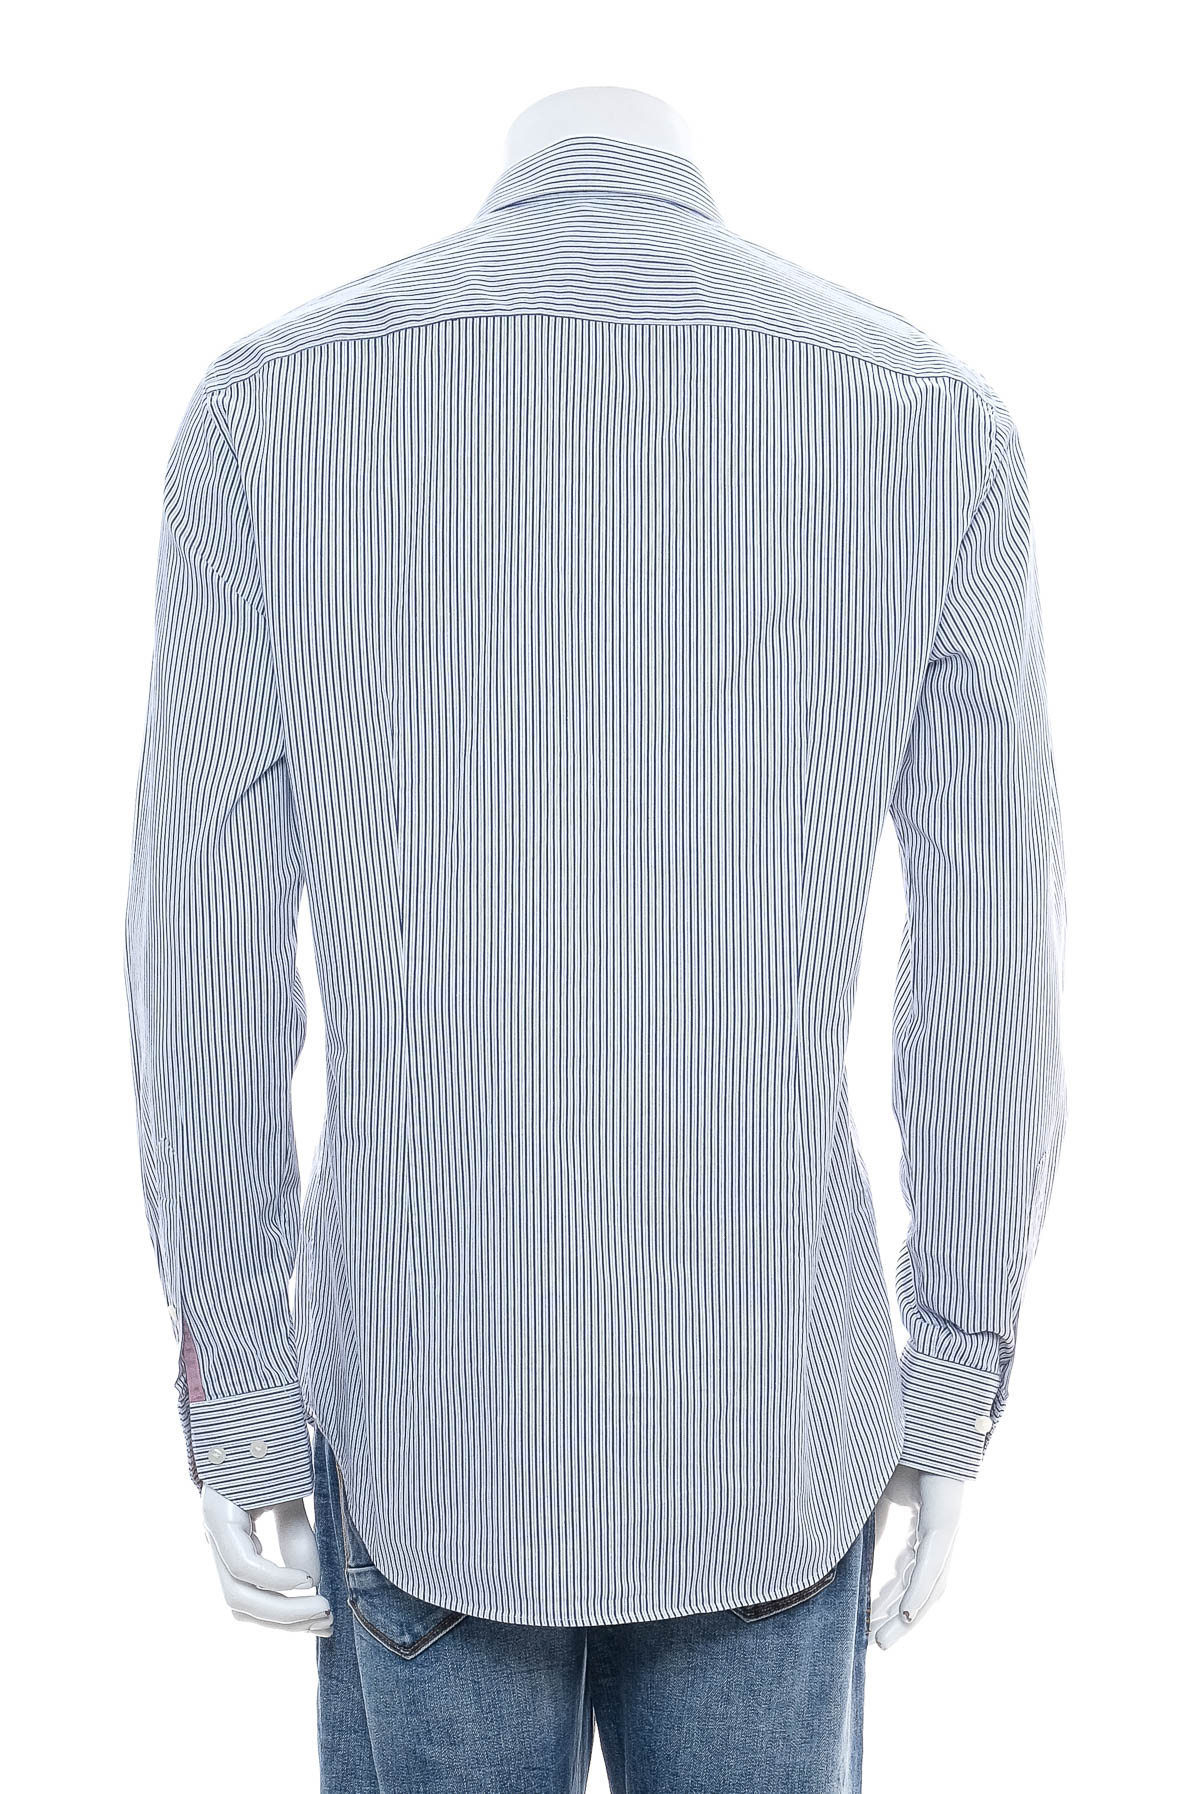 Ανδρικό πουκάμισο - TOMMY HILFIGER - 1